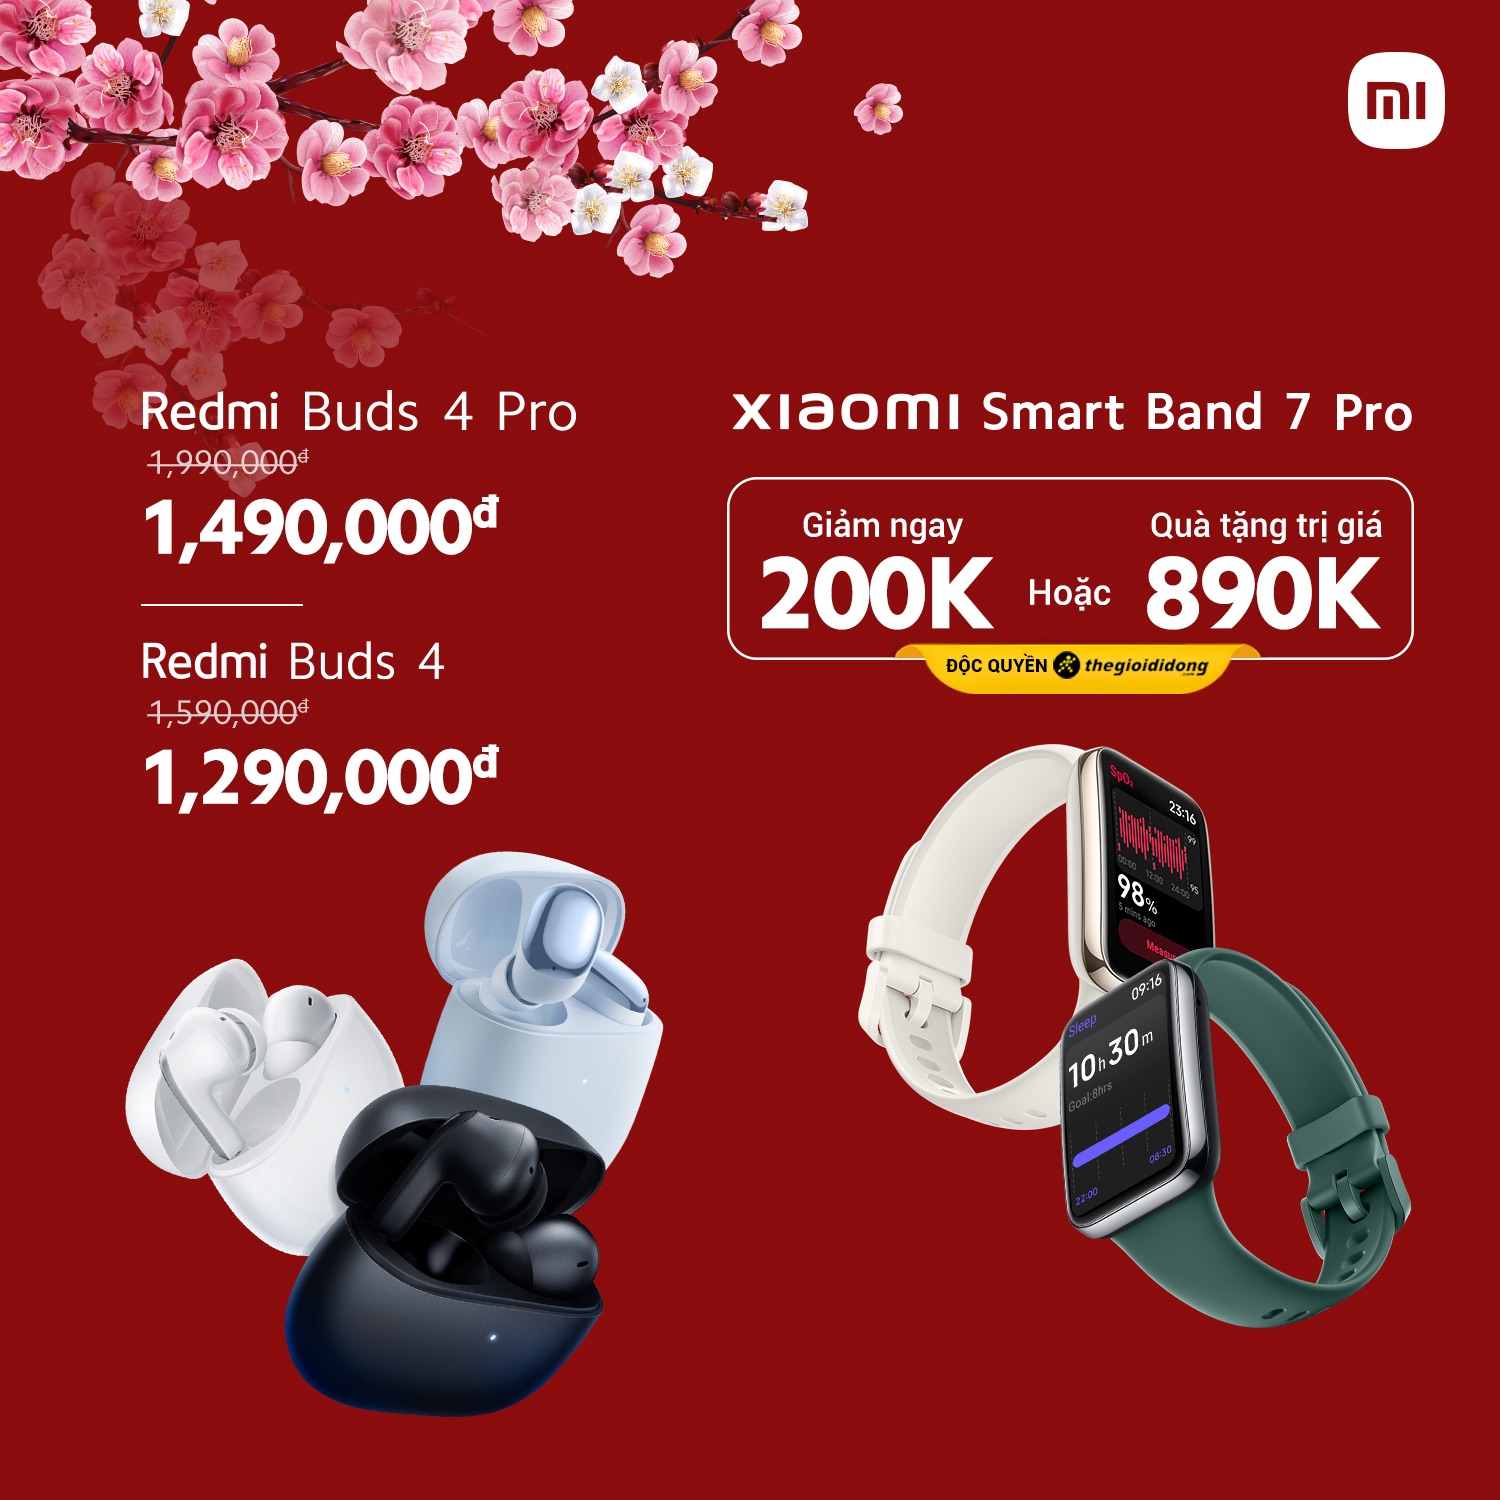 Hàng loạt điện thoại và thiết bị nhà thông minh của Xiaomi được ưu đãi lên đến 33% mừng năm mới